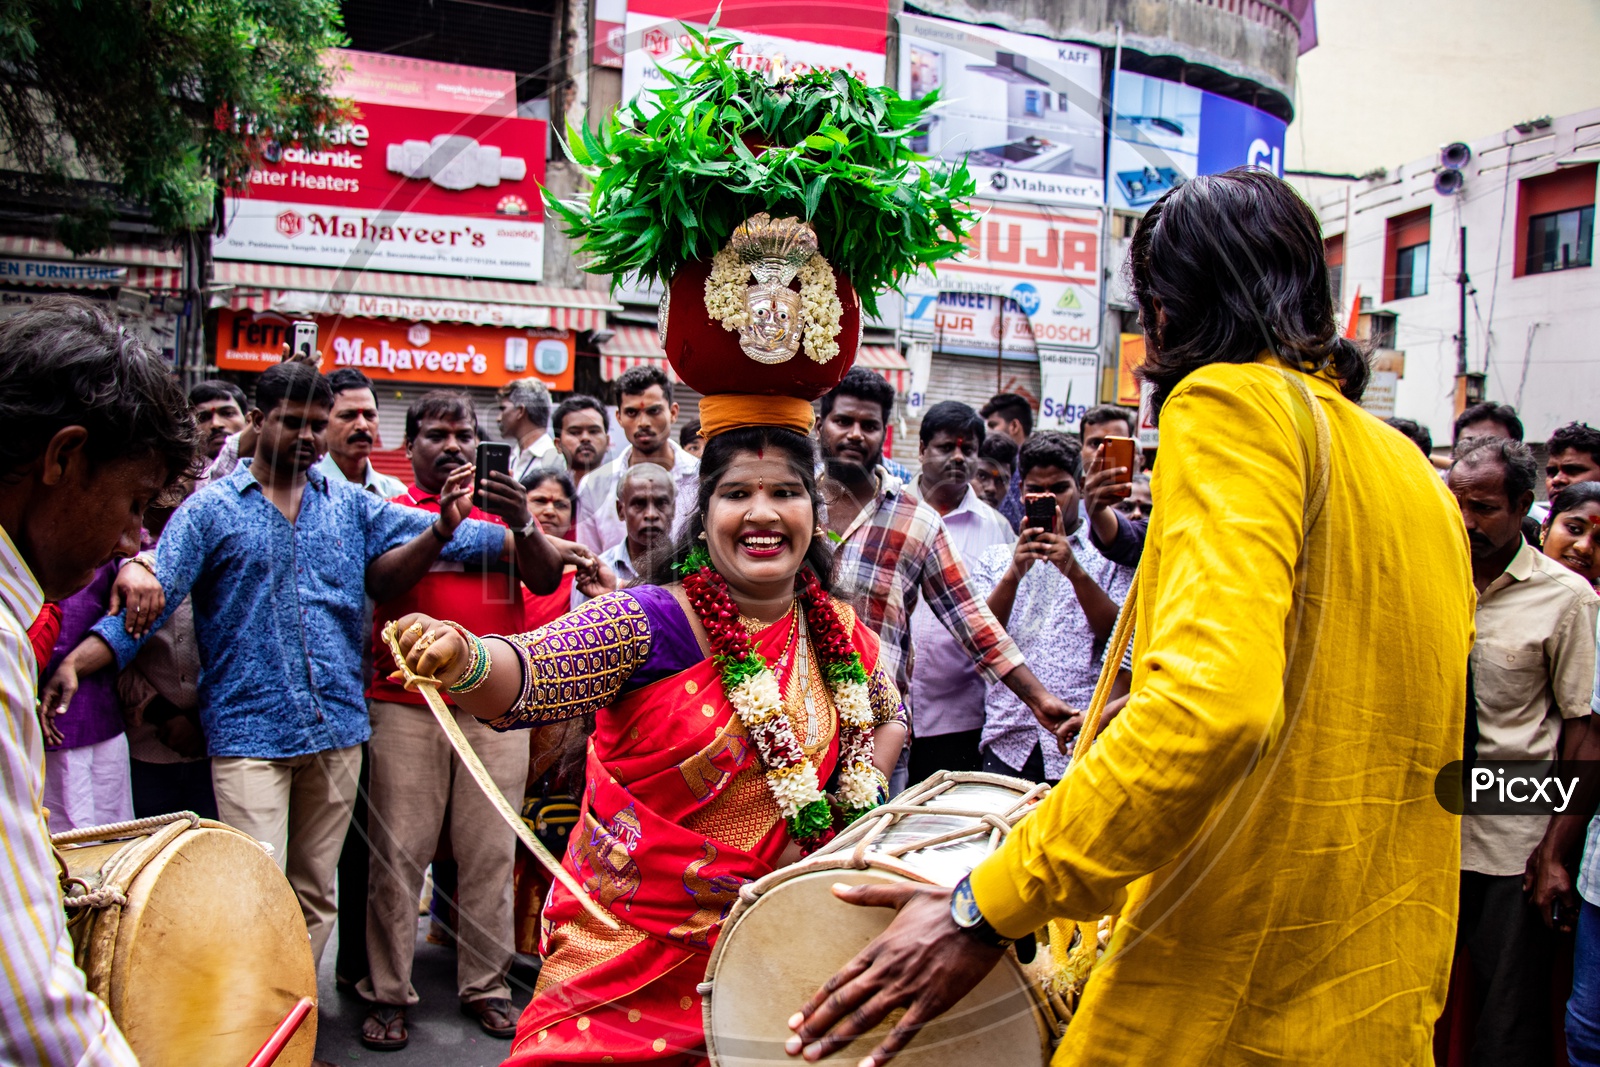 Jogini Or Woman Dancing in Trance At Ujjaini Mahankali Bonalu Jogini Or Woman Dancing in Trance At Ujjaini Mahankali Bonalu